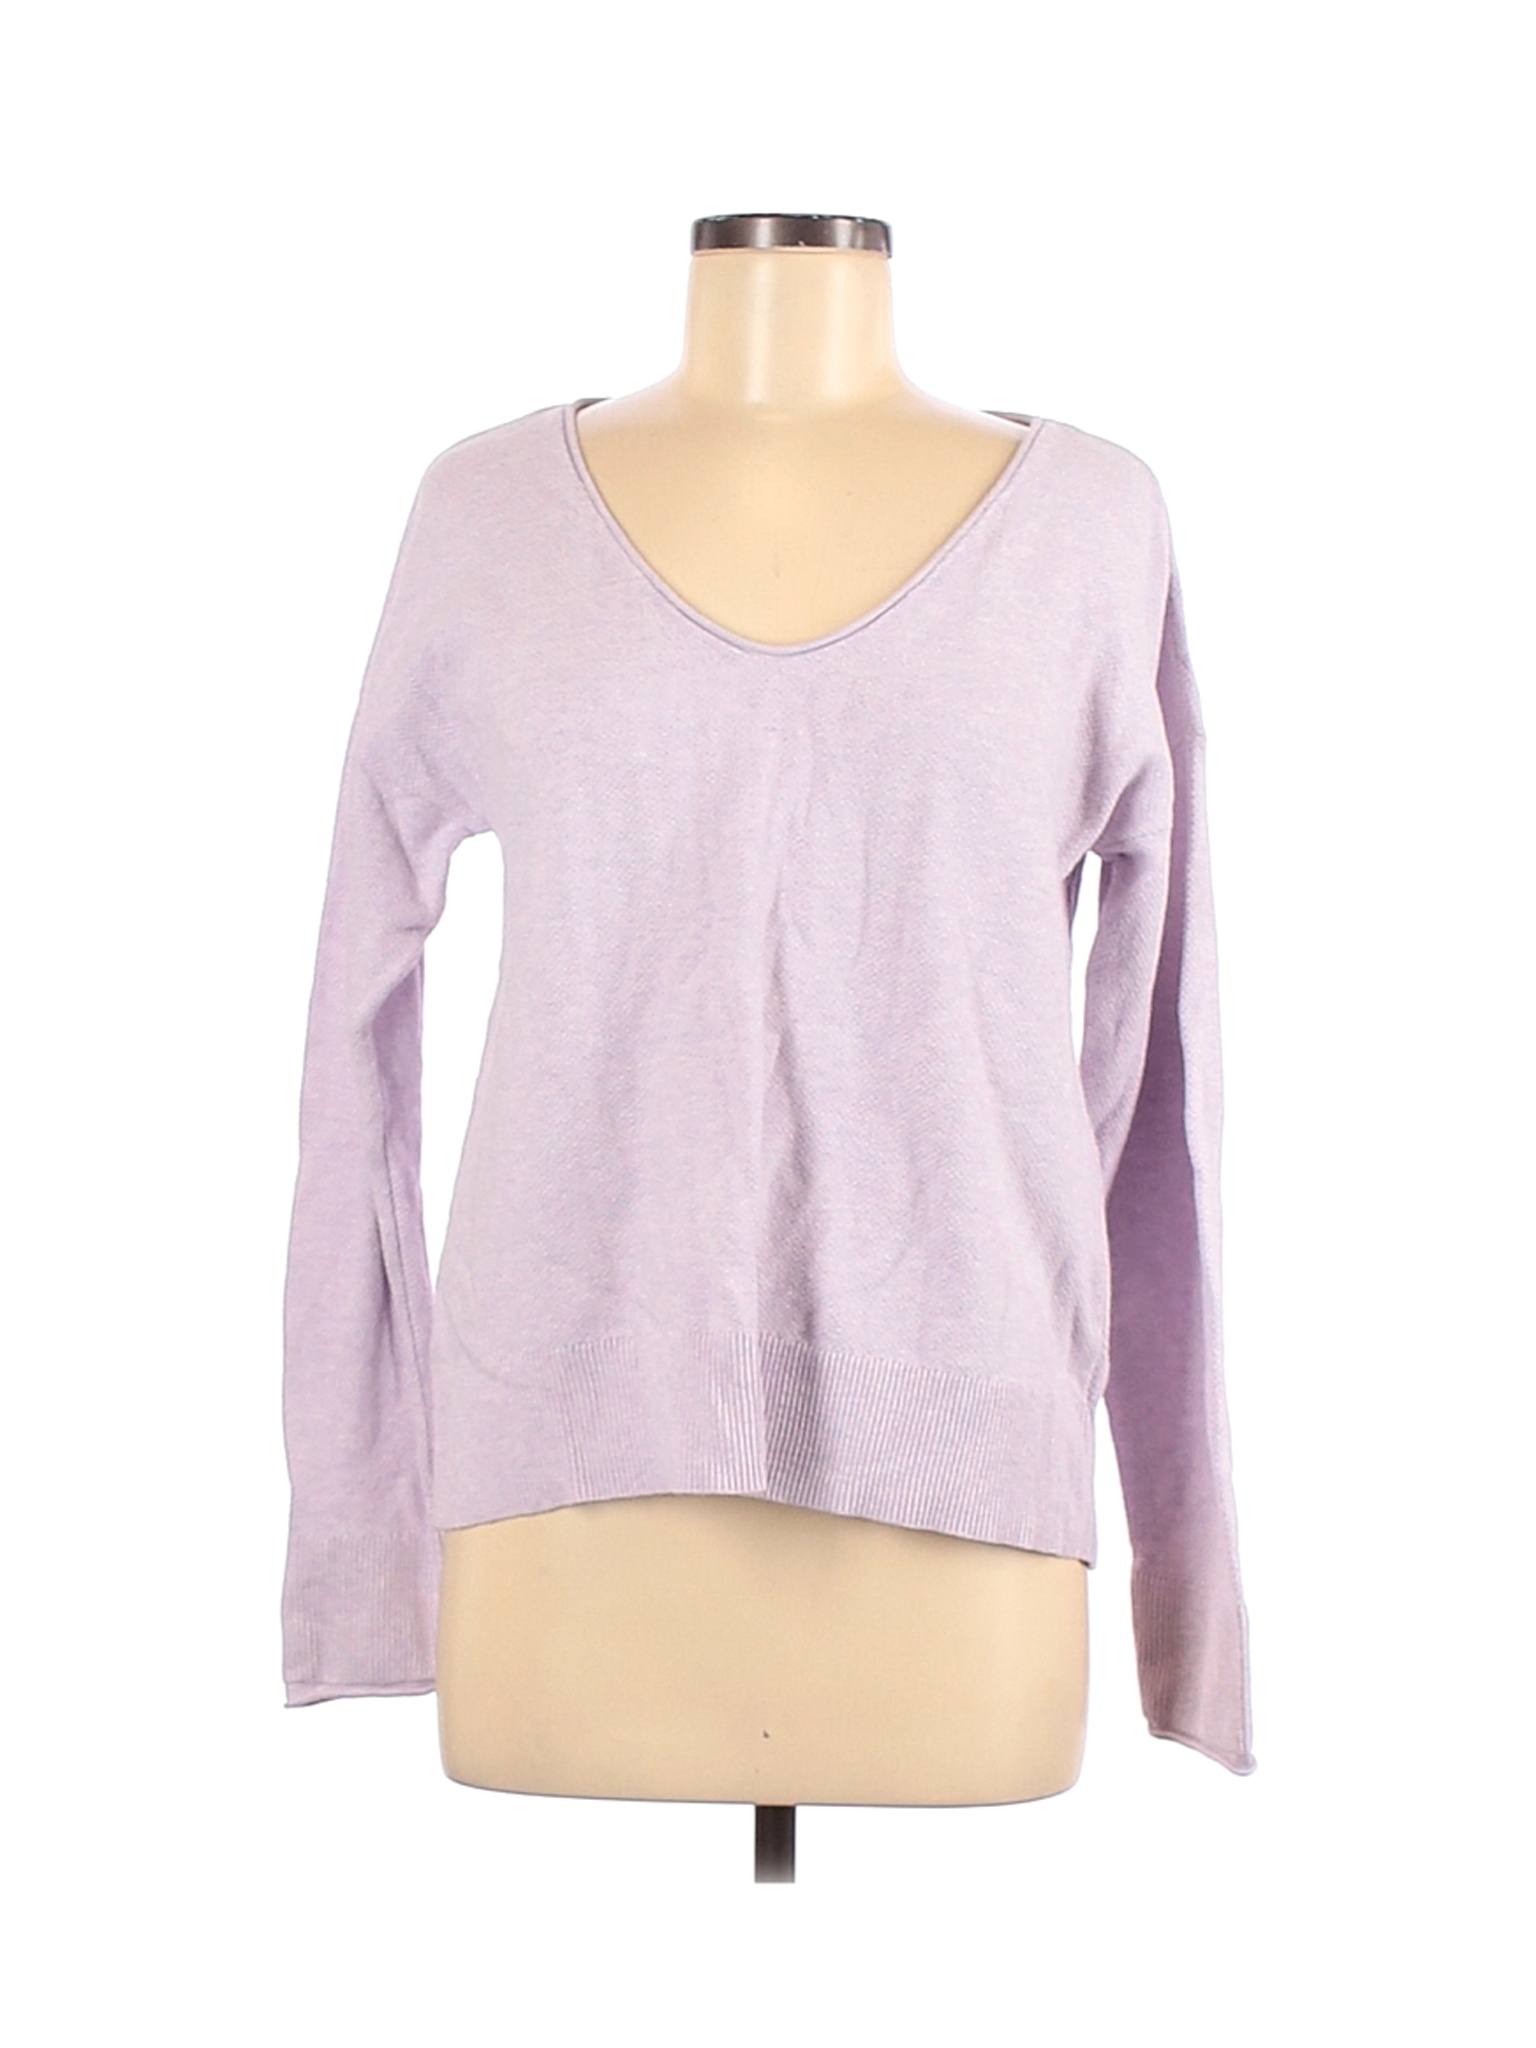 Gap Women Purple Pullover Sweater M | eBay